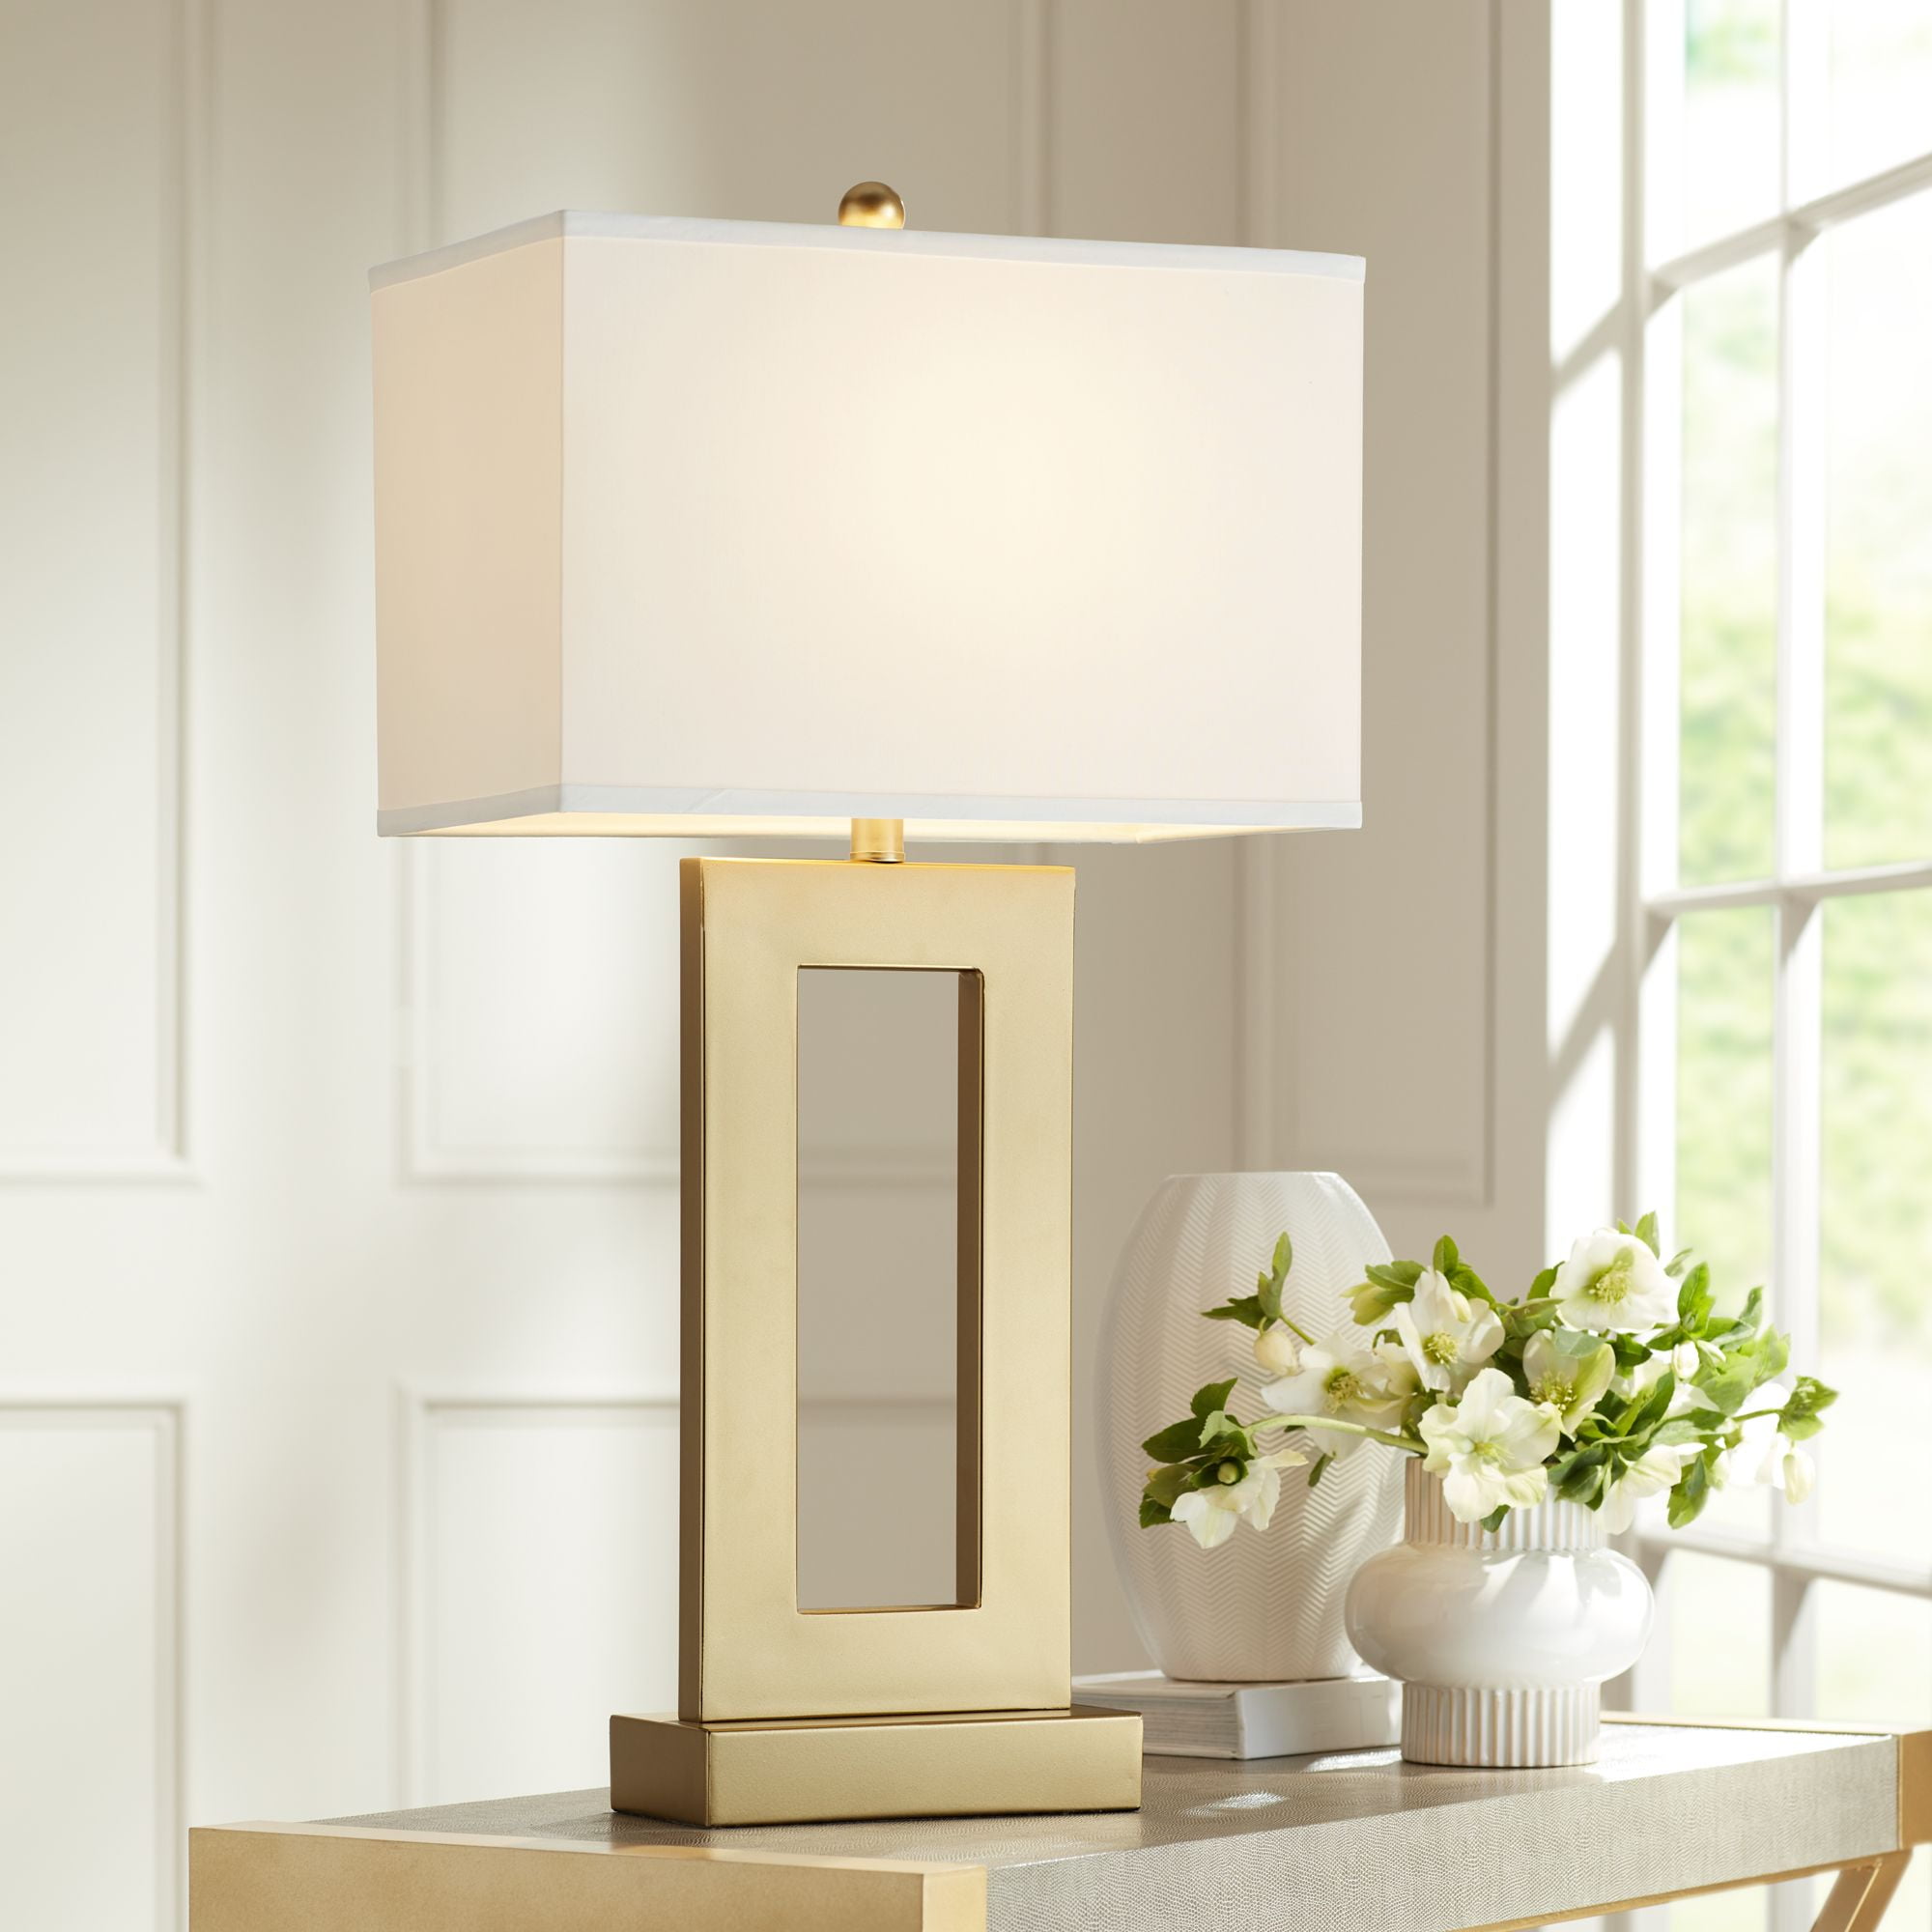 鍔 advantage experience 360 Lighting Modern Glam Luxury Table Lamp 30" Tall Gold Metal Open Base  Oatmeal Rectangular Shade for Living Room Bedroom House Bedside -  Walmart.com